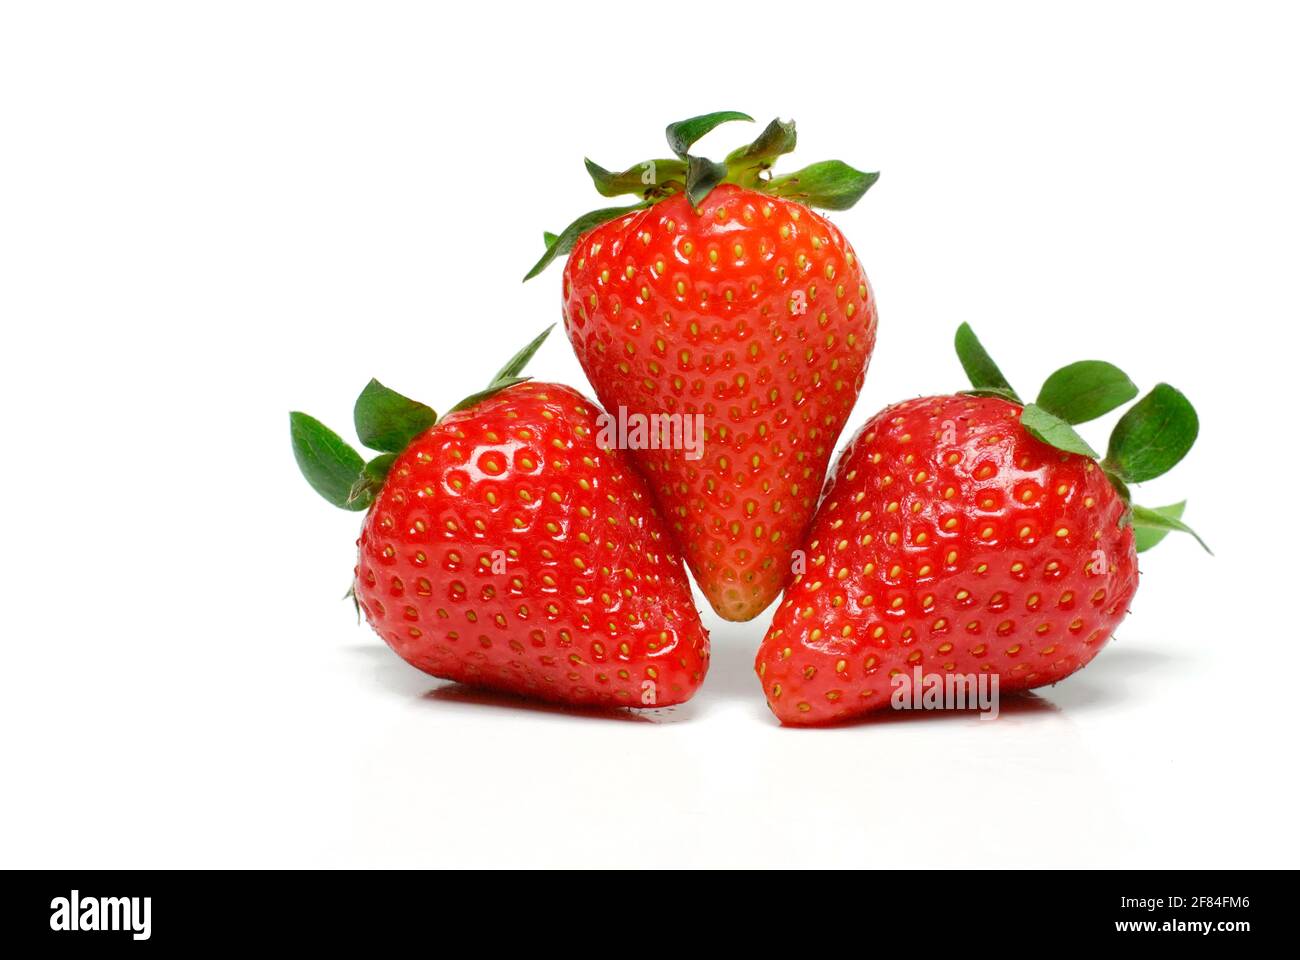 Strawberries (Fragaria x ananassa) Stock Photo